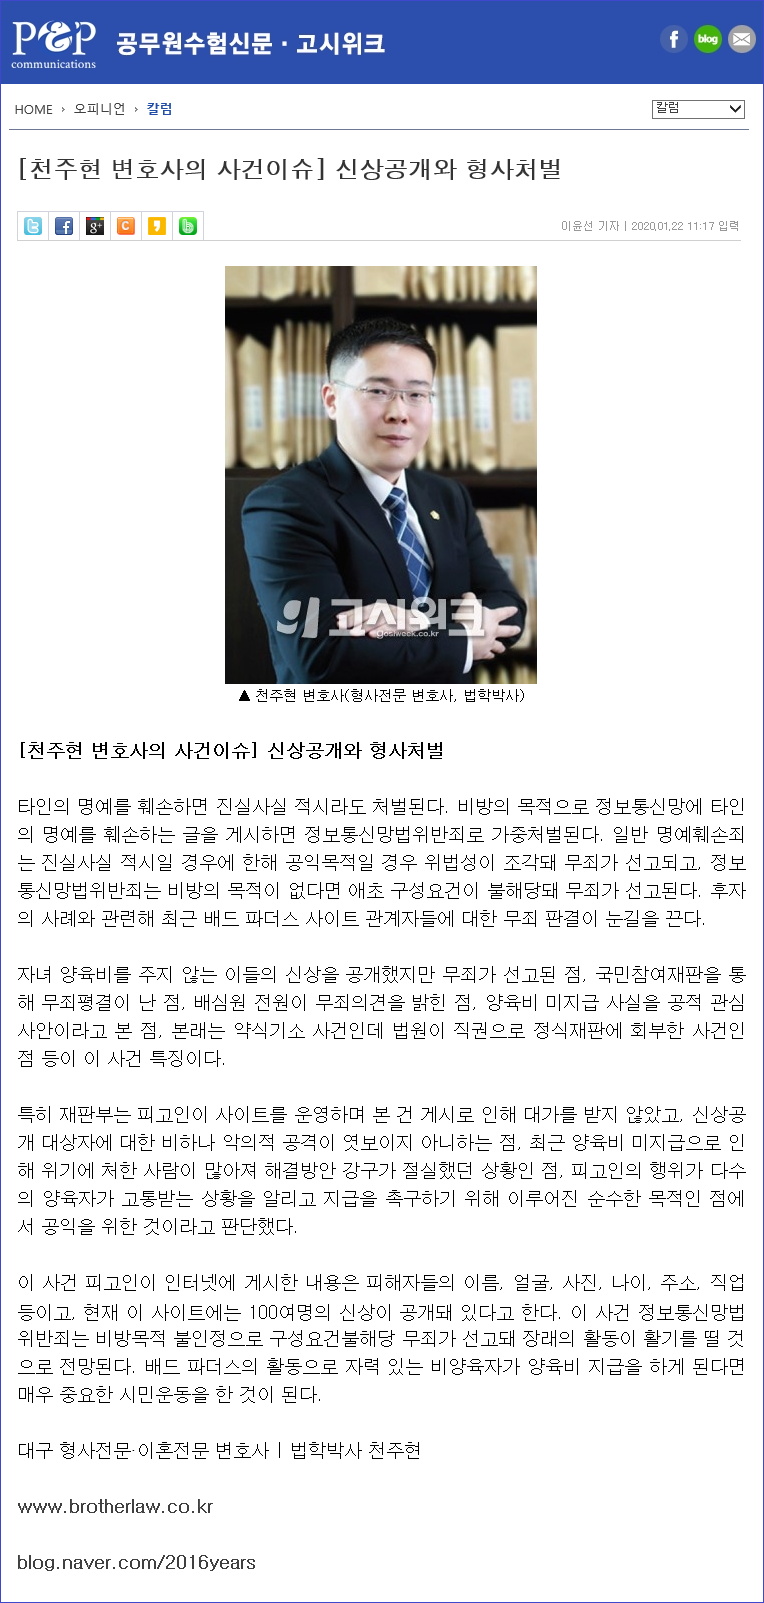 200122-천주현 변호사의 사건이슈 1회차(신상공개와 형사처벌)-블로그용.png